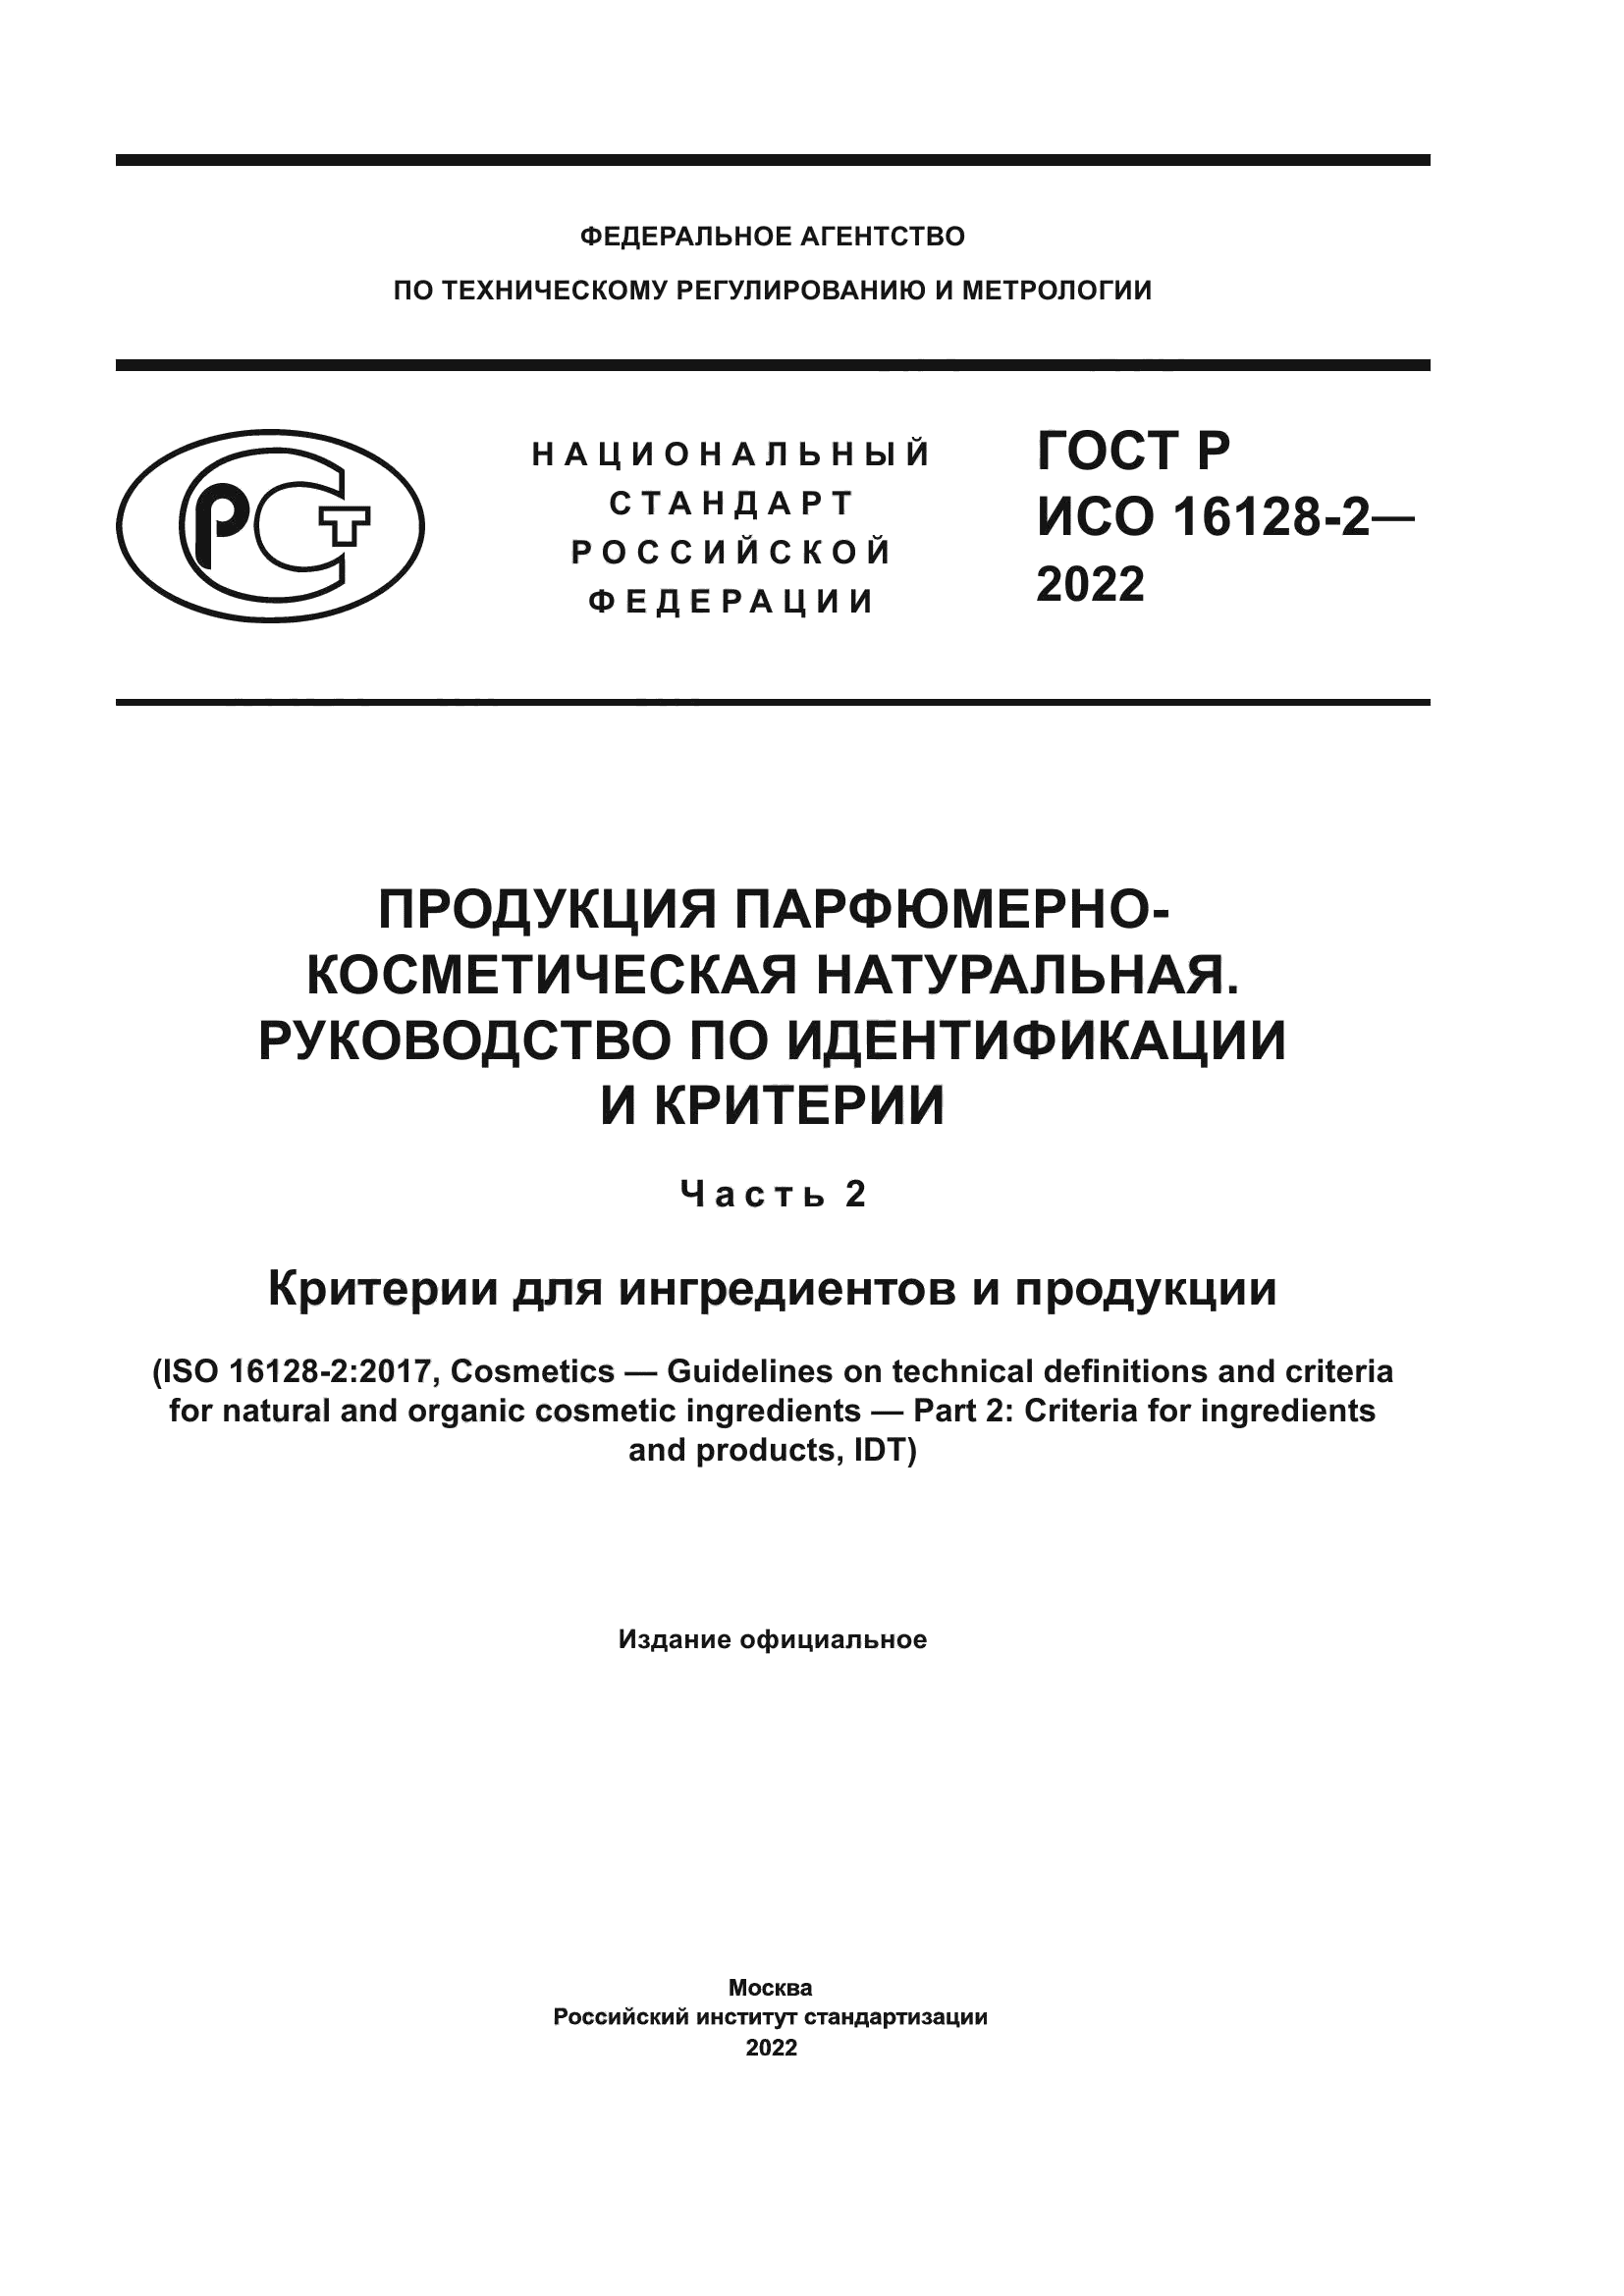 ГОСТ Р ИСО 16128-2-2022